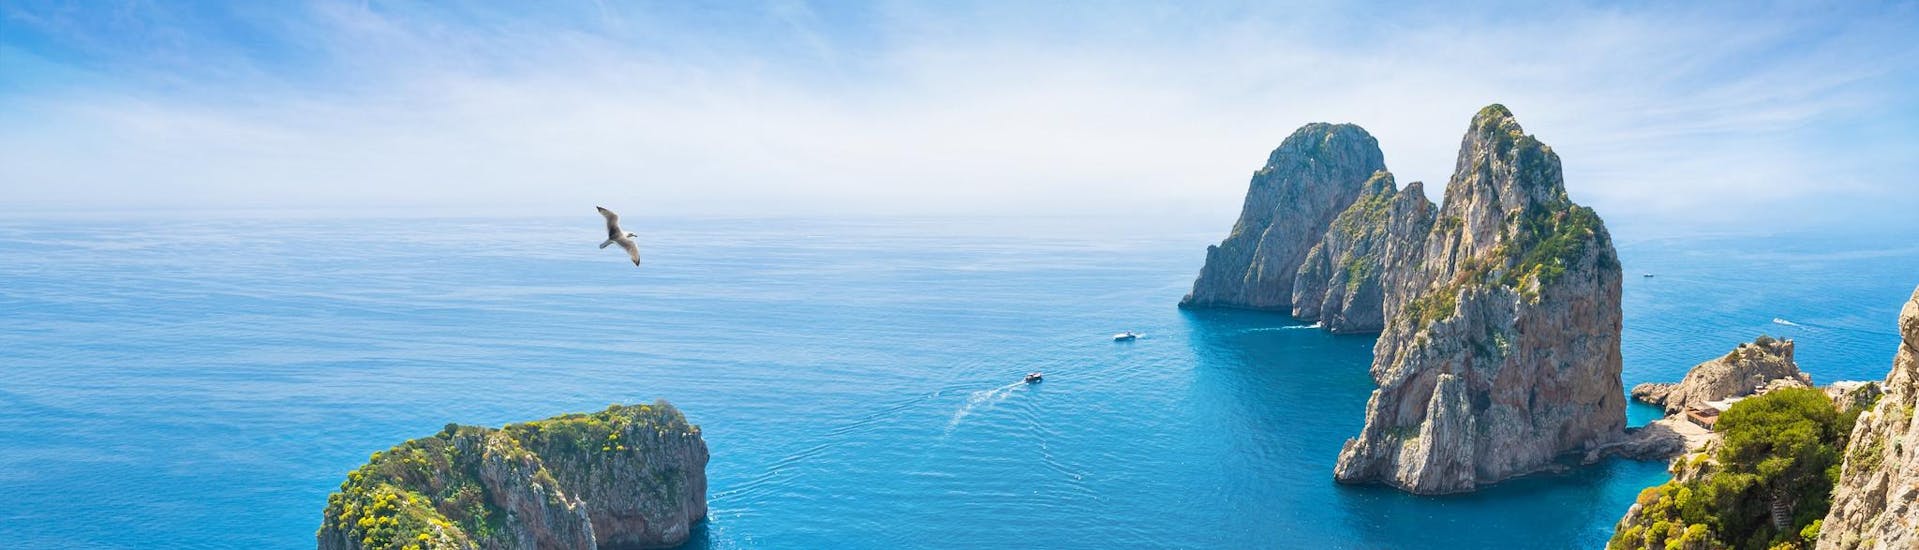 Vista dall'alto delle barche durante una gita in barca a Capri.